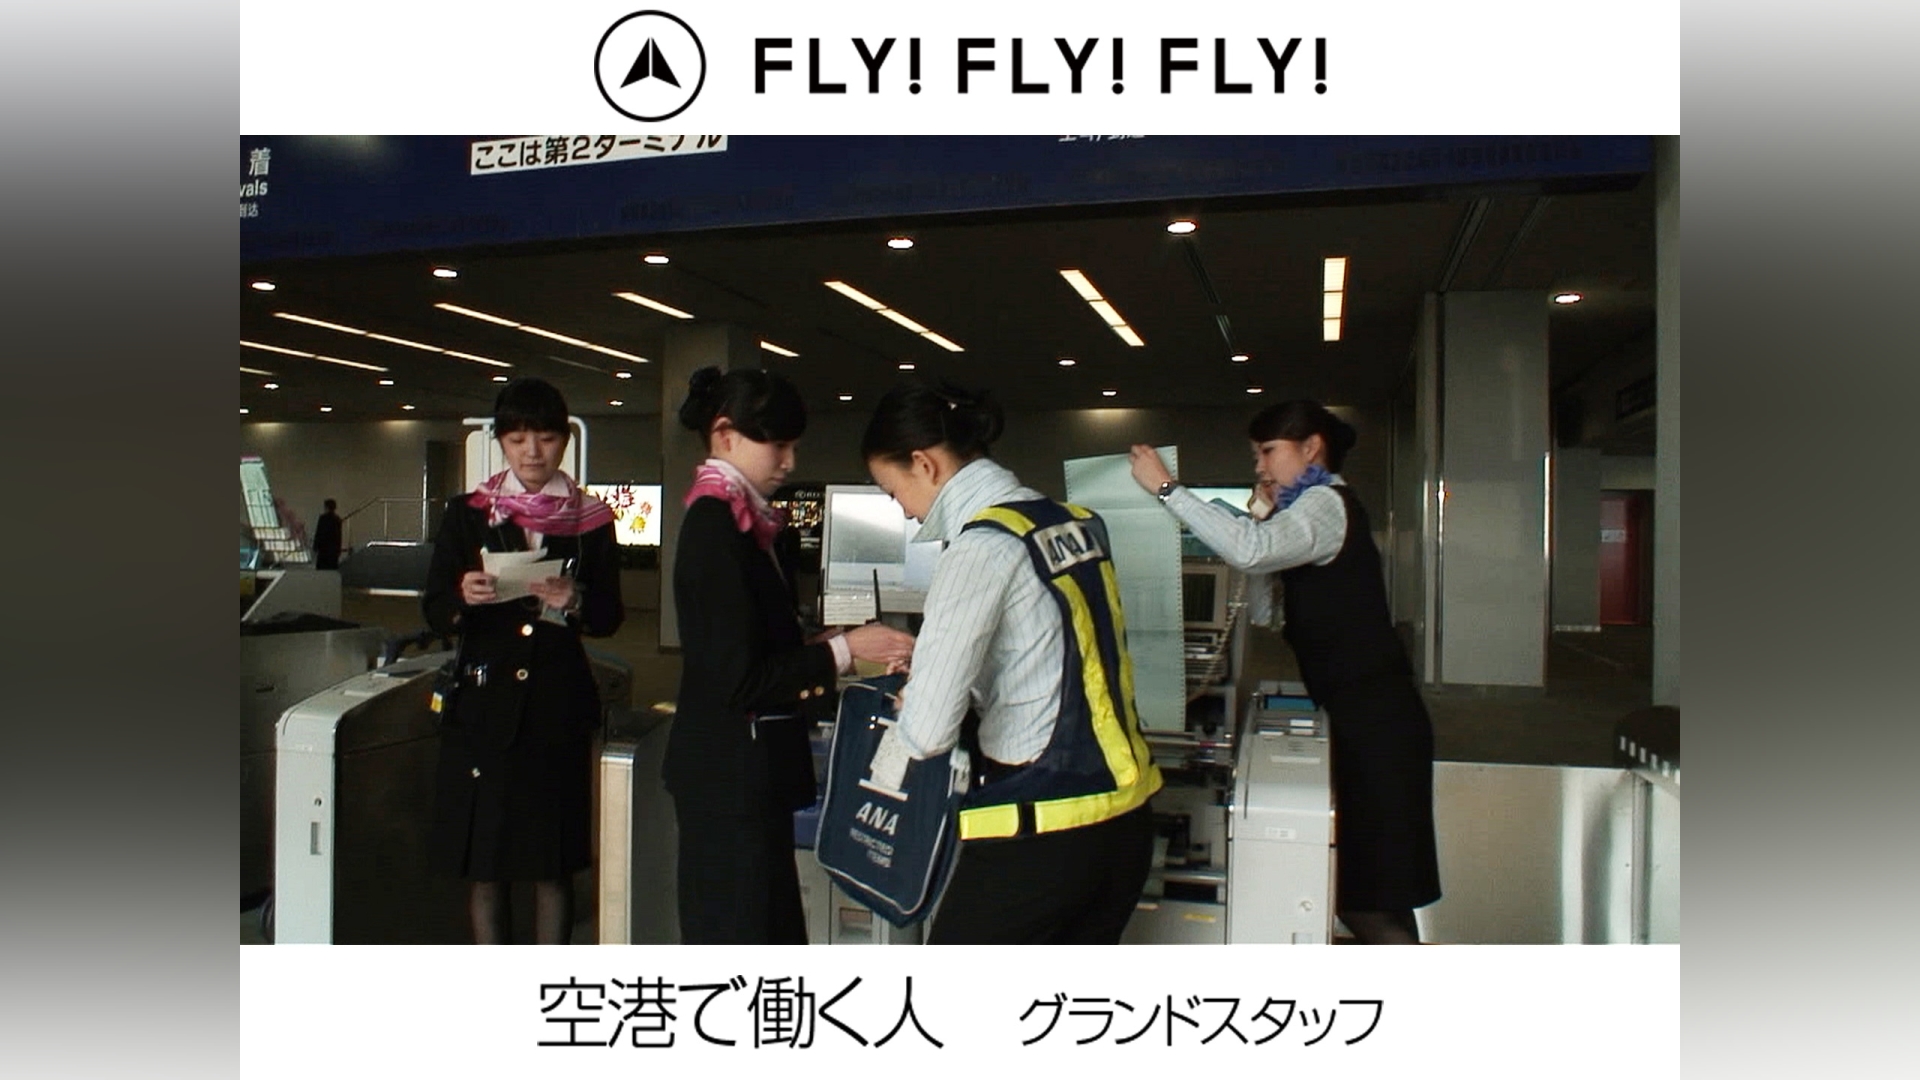 FLY!FLY!FLY!空港で働く人 グランドスタッフ｜カンテレドーガ【初回30